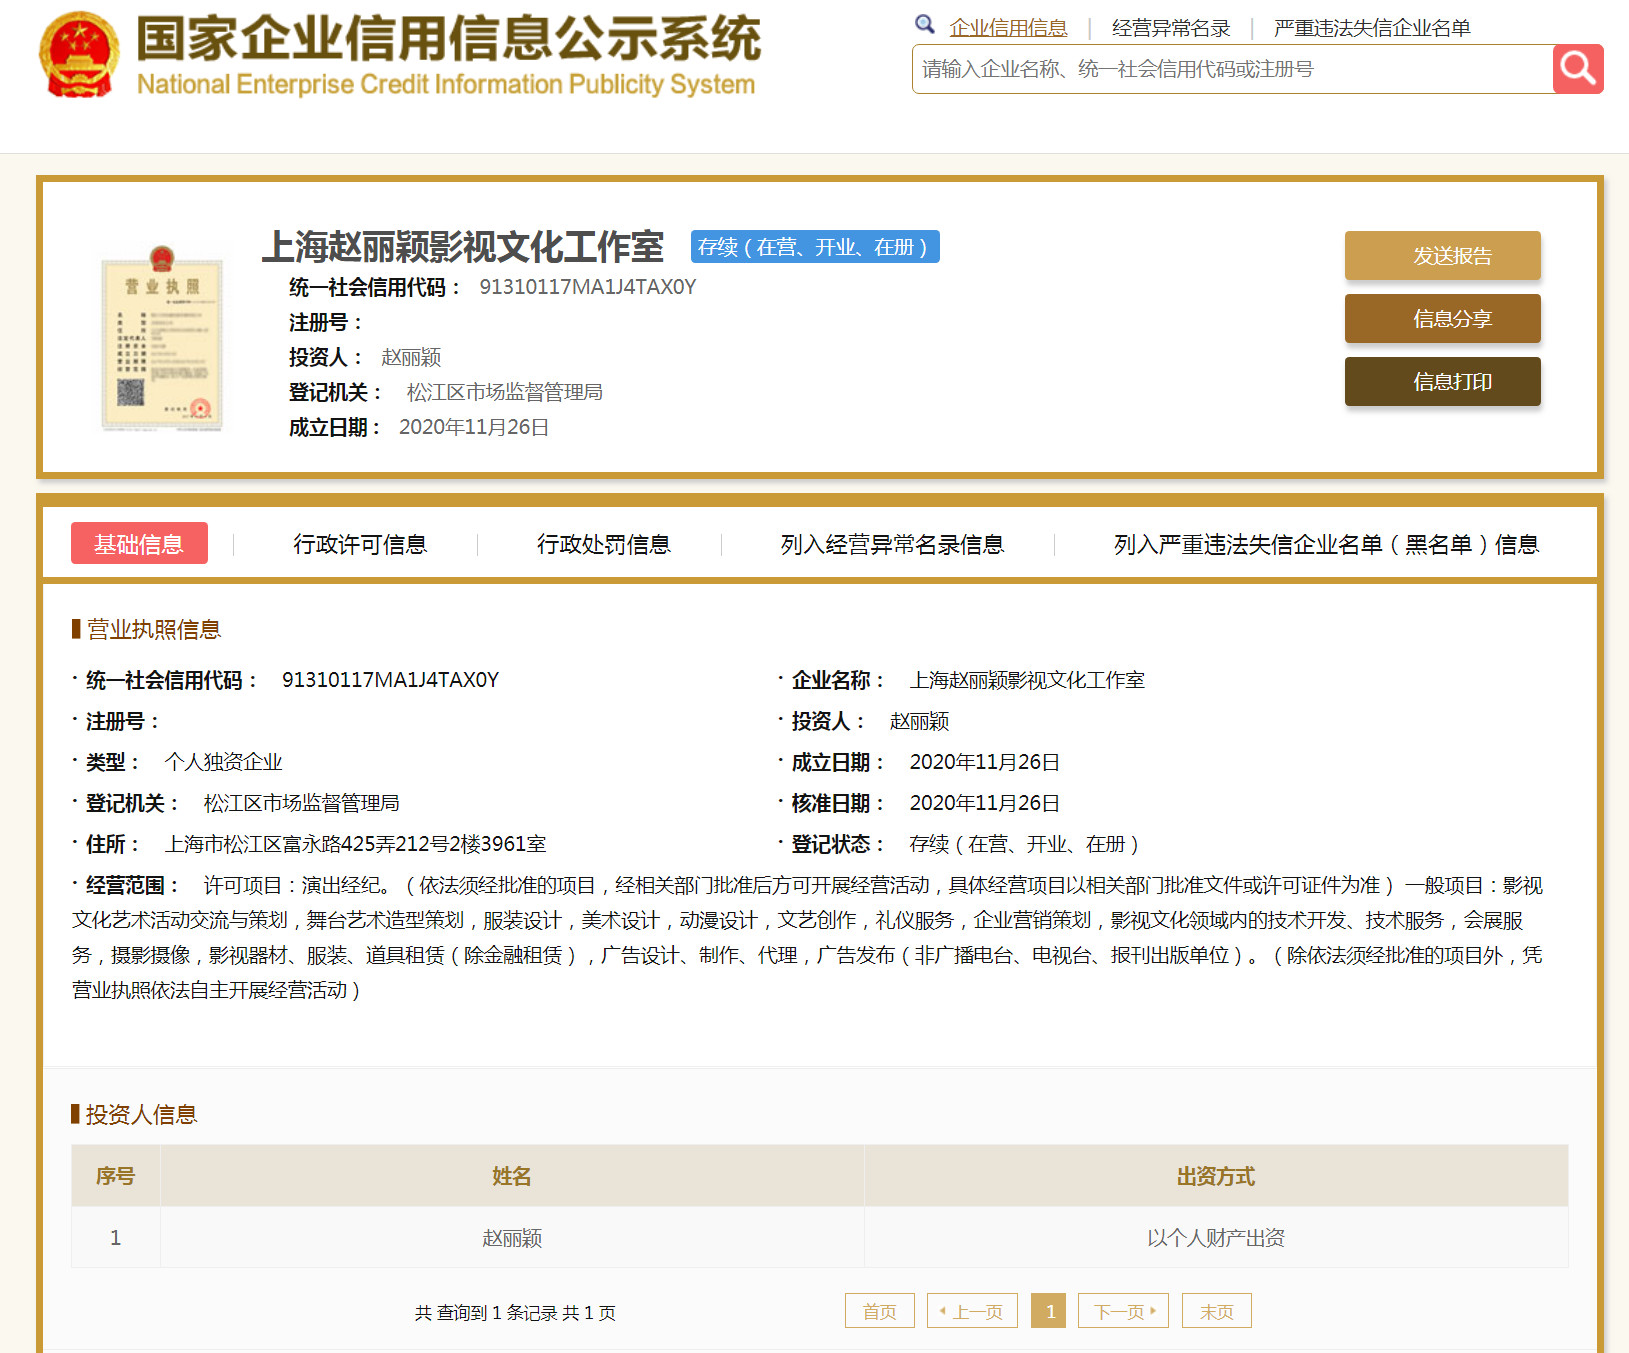 上海赵丽颖影视文化工作室在11月26日成立。 国家企业信用信息公示系统官网 截图